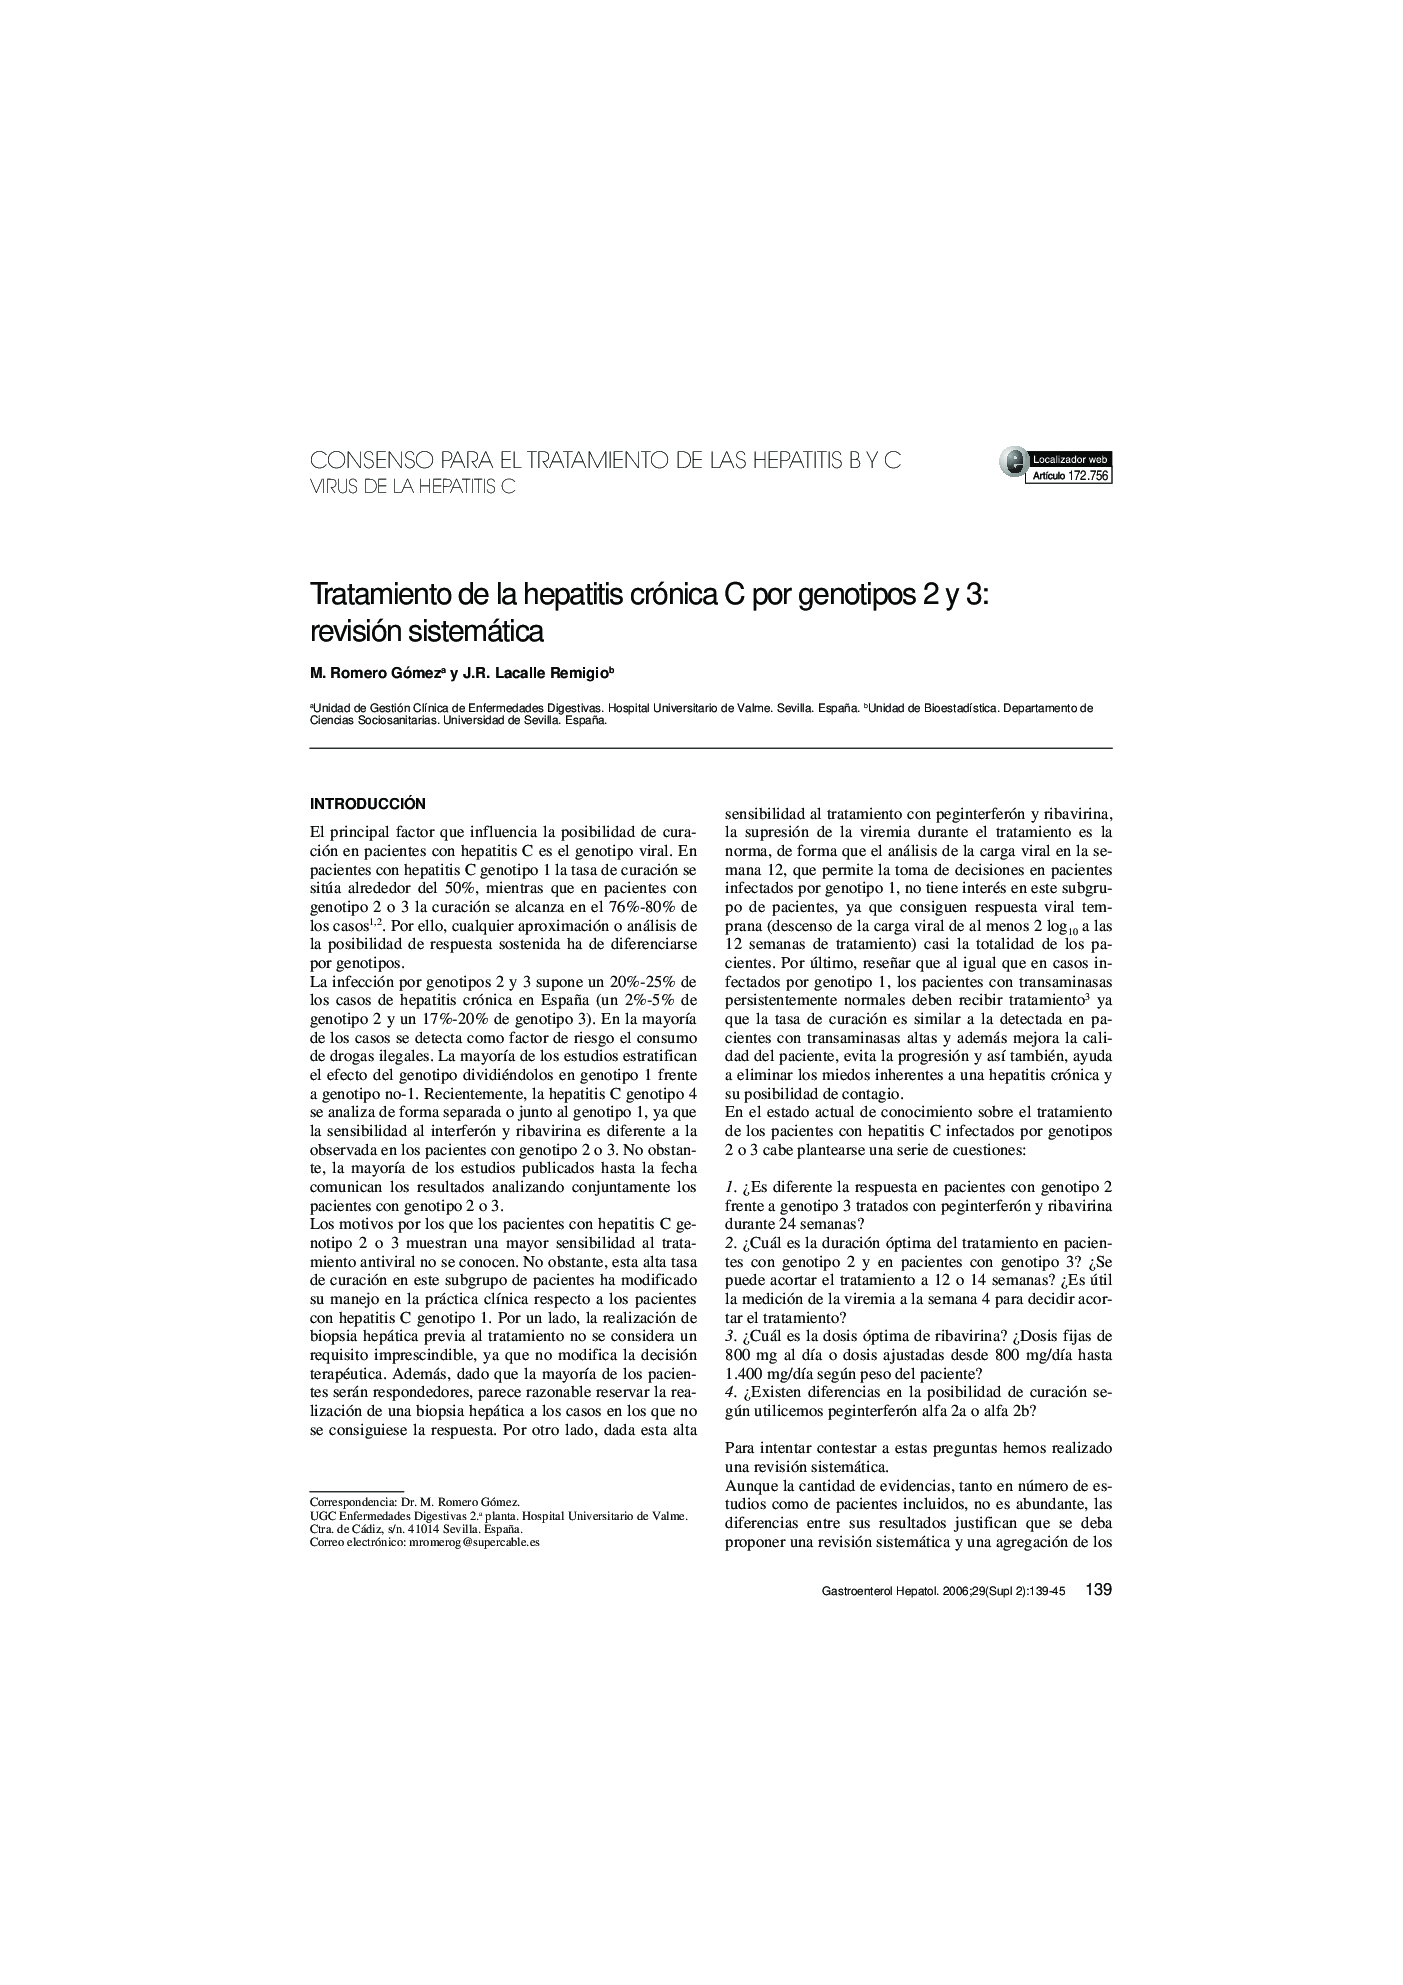 Tratamiento de la hepatitis crónica C por genotipos 2 y 3: revisión sistemática